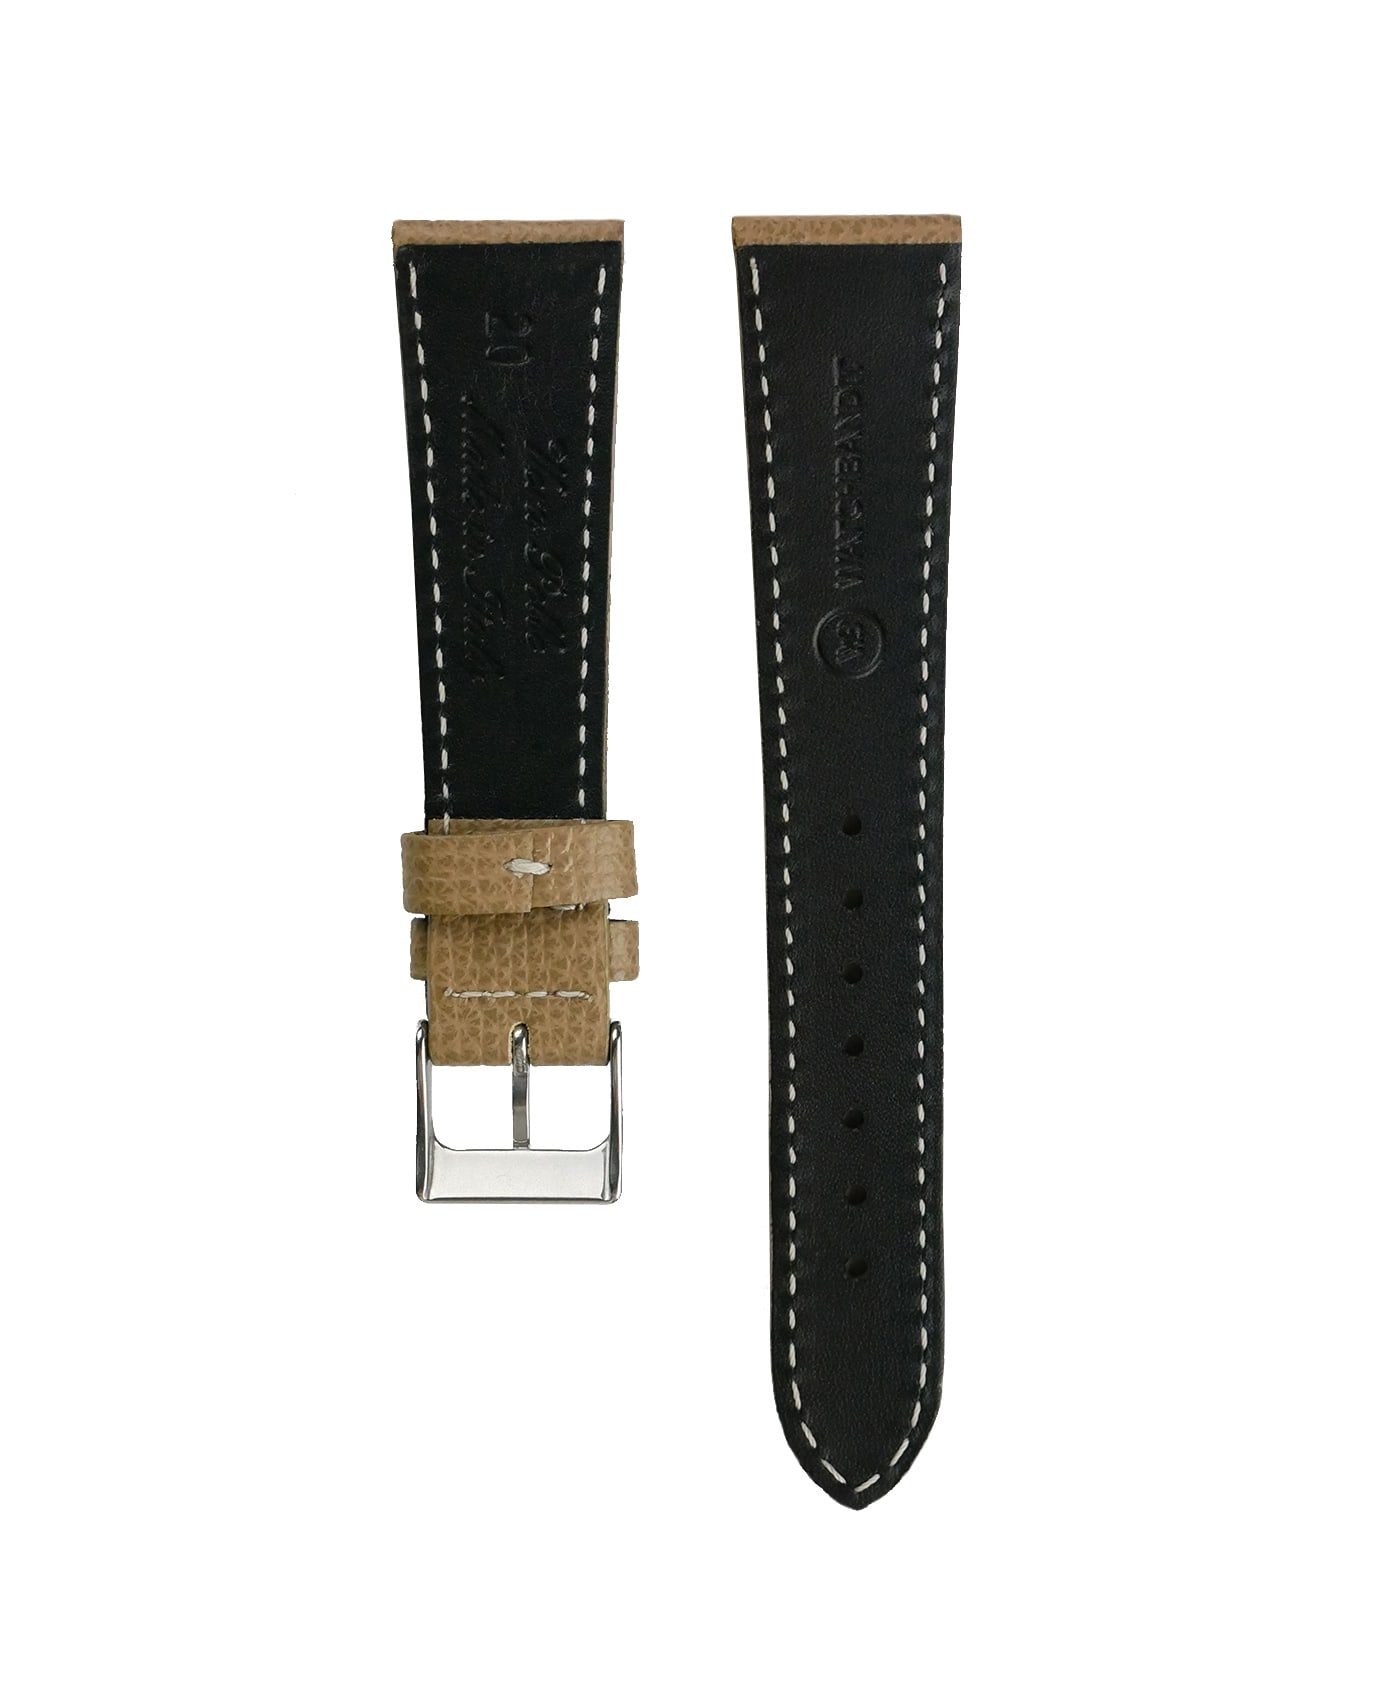 Textured calfskin leather watch strap beige back watchbandit